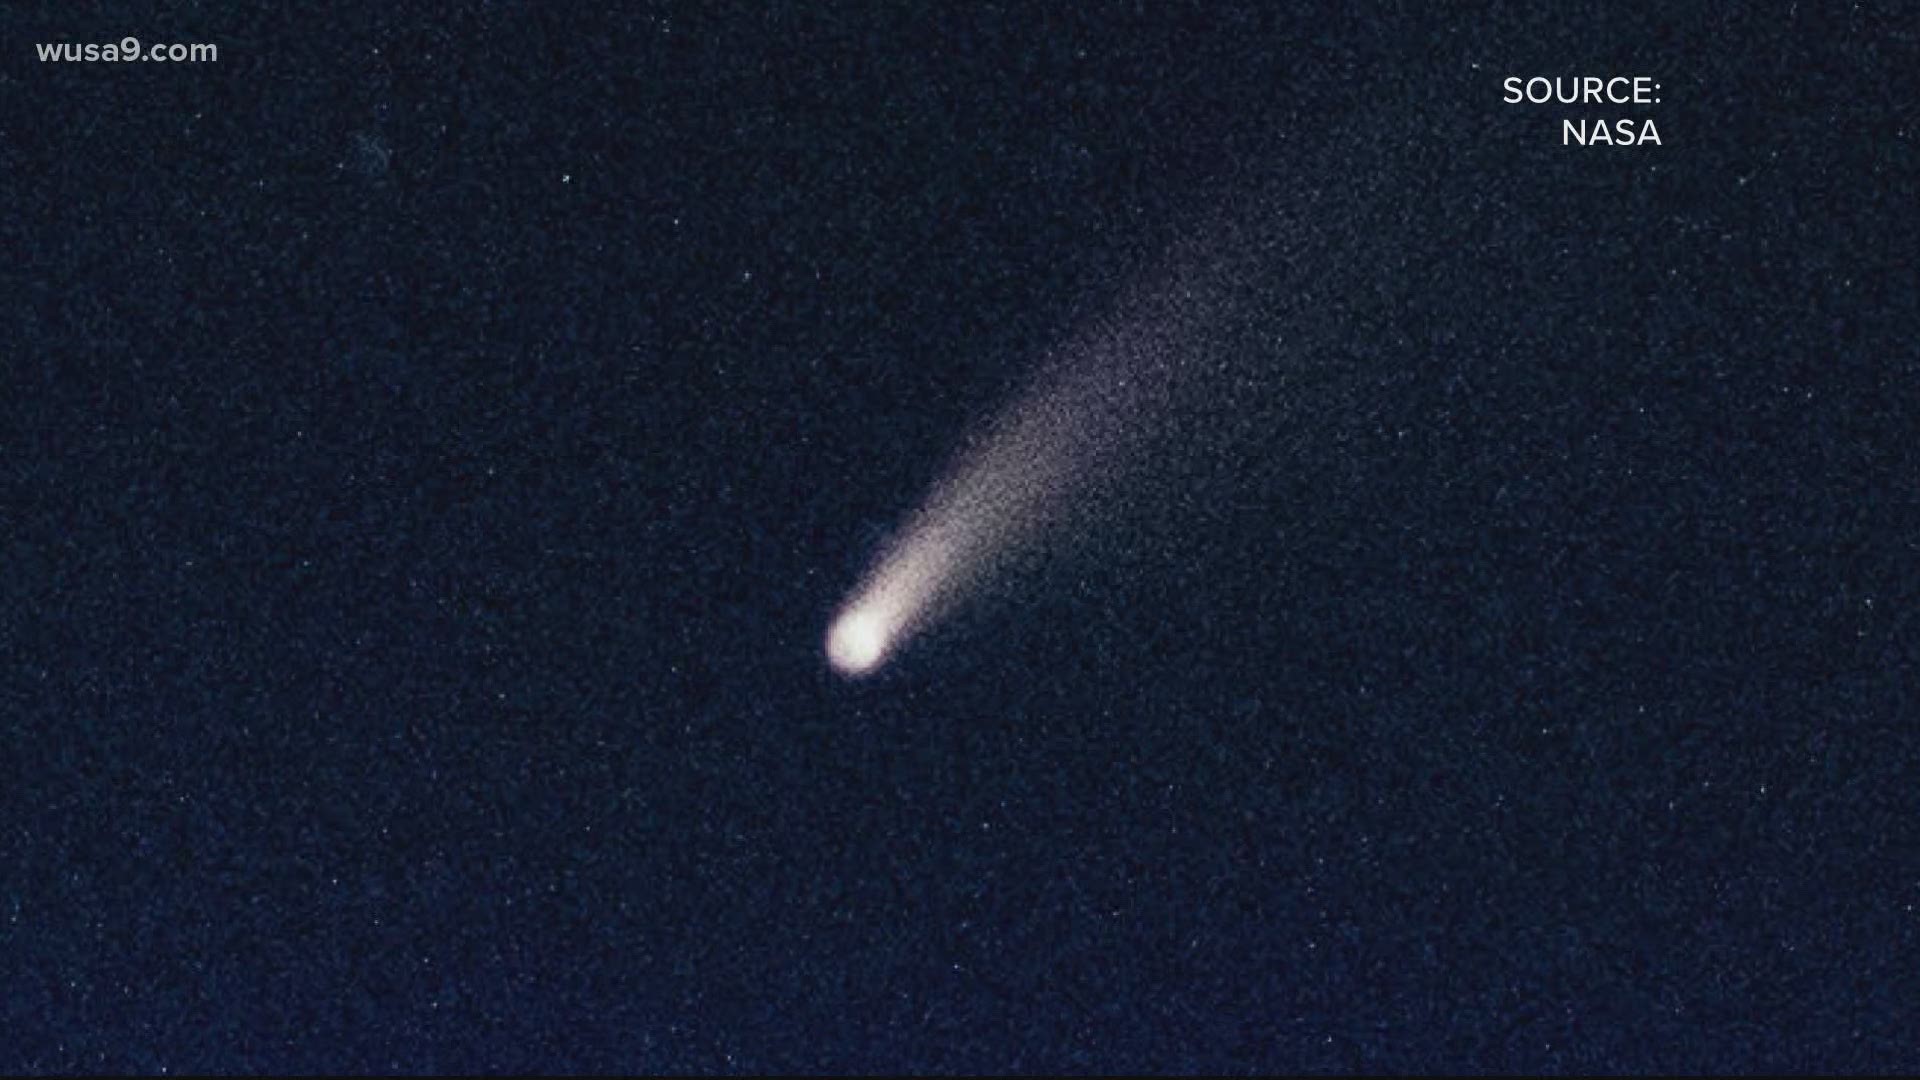 Comet Neowise Orbit